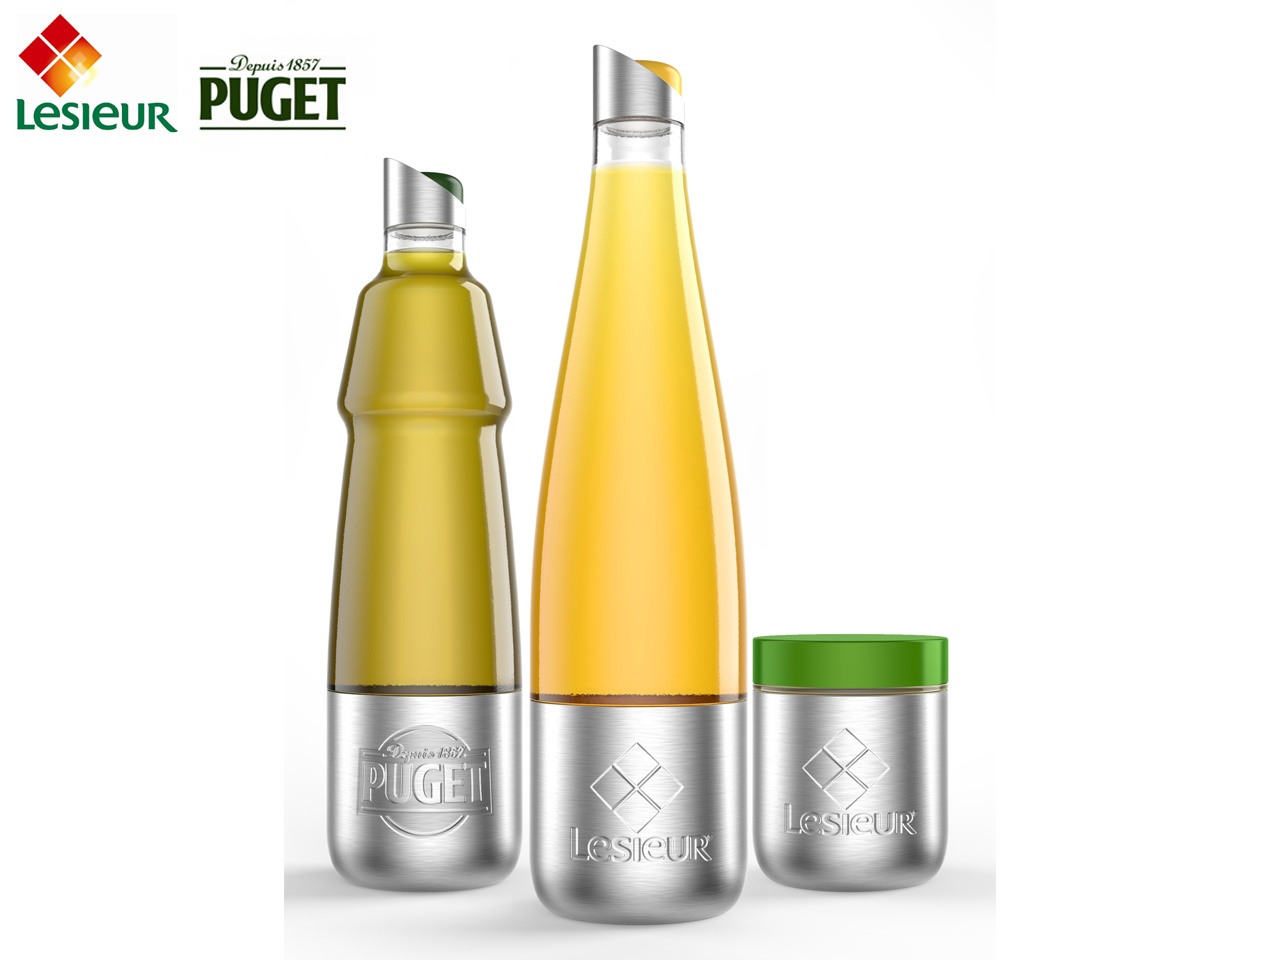 Des produits Lesieur et Puget bientôt consignés et disponibles dans des emballages durables grâce à  LOOP